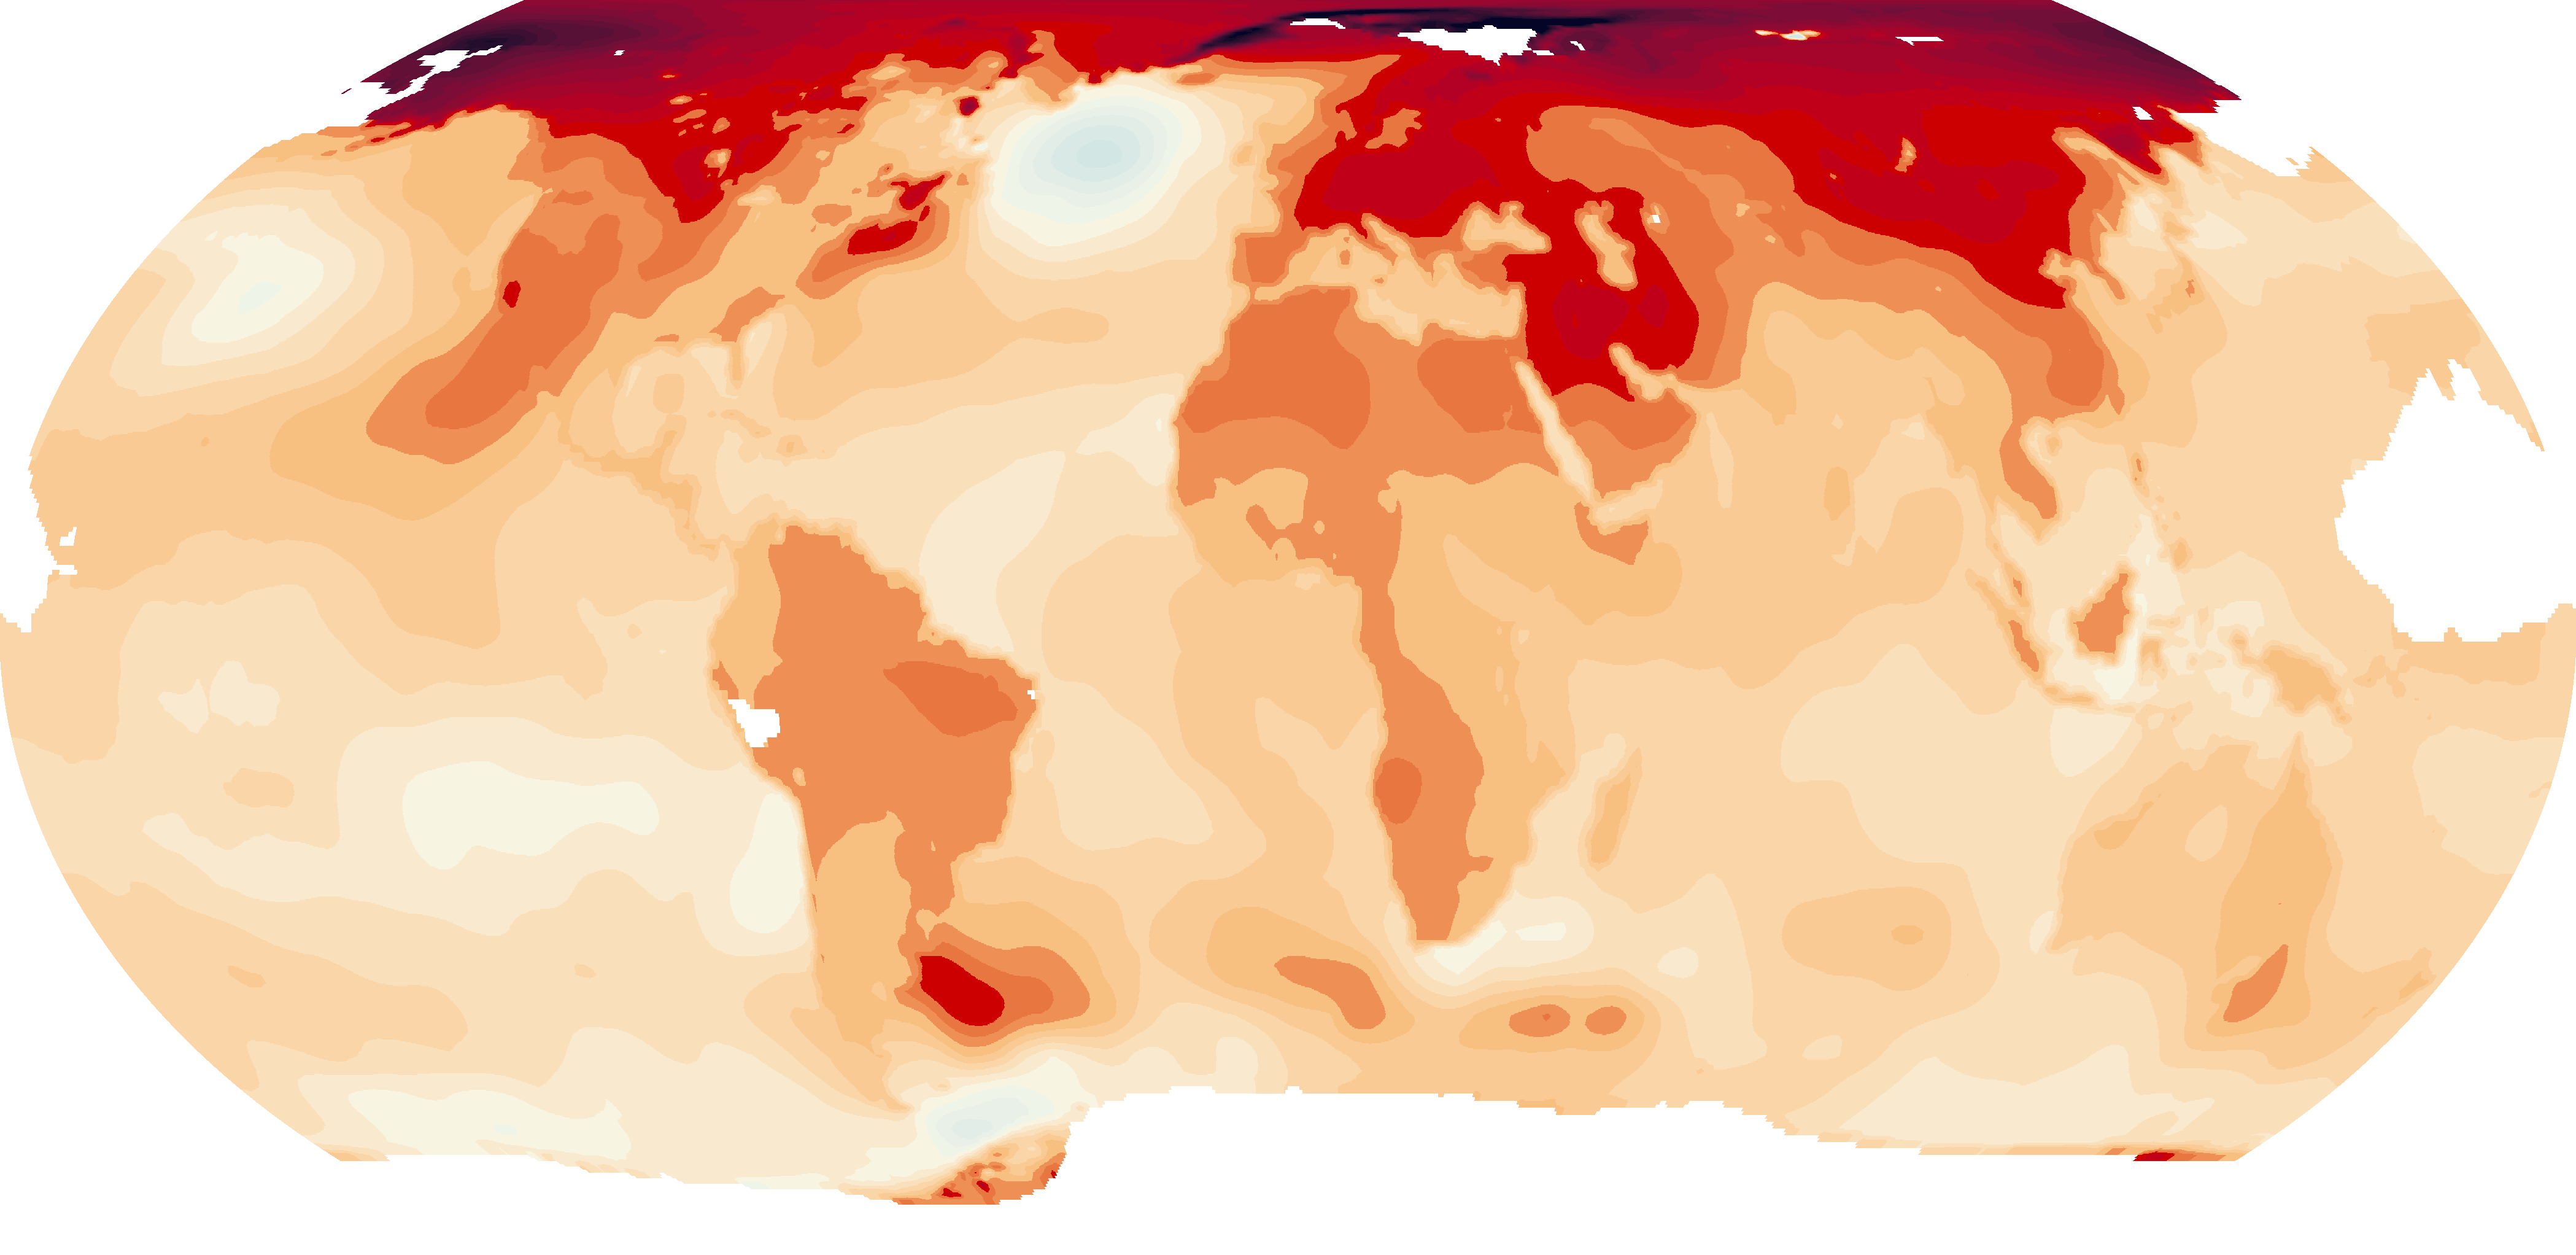 Spelade in den här sommaren, hundratals temperaturen register runt om i världen